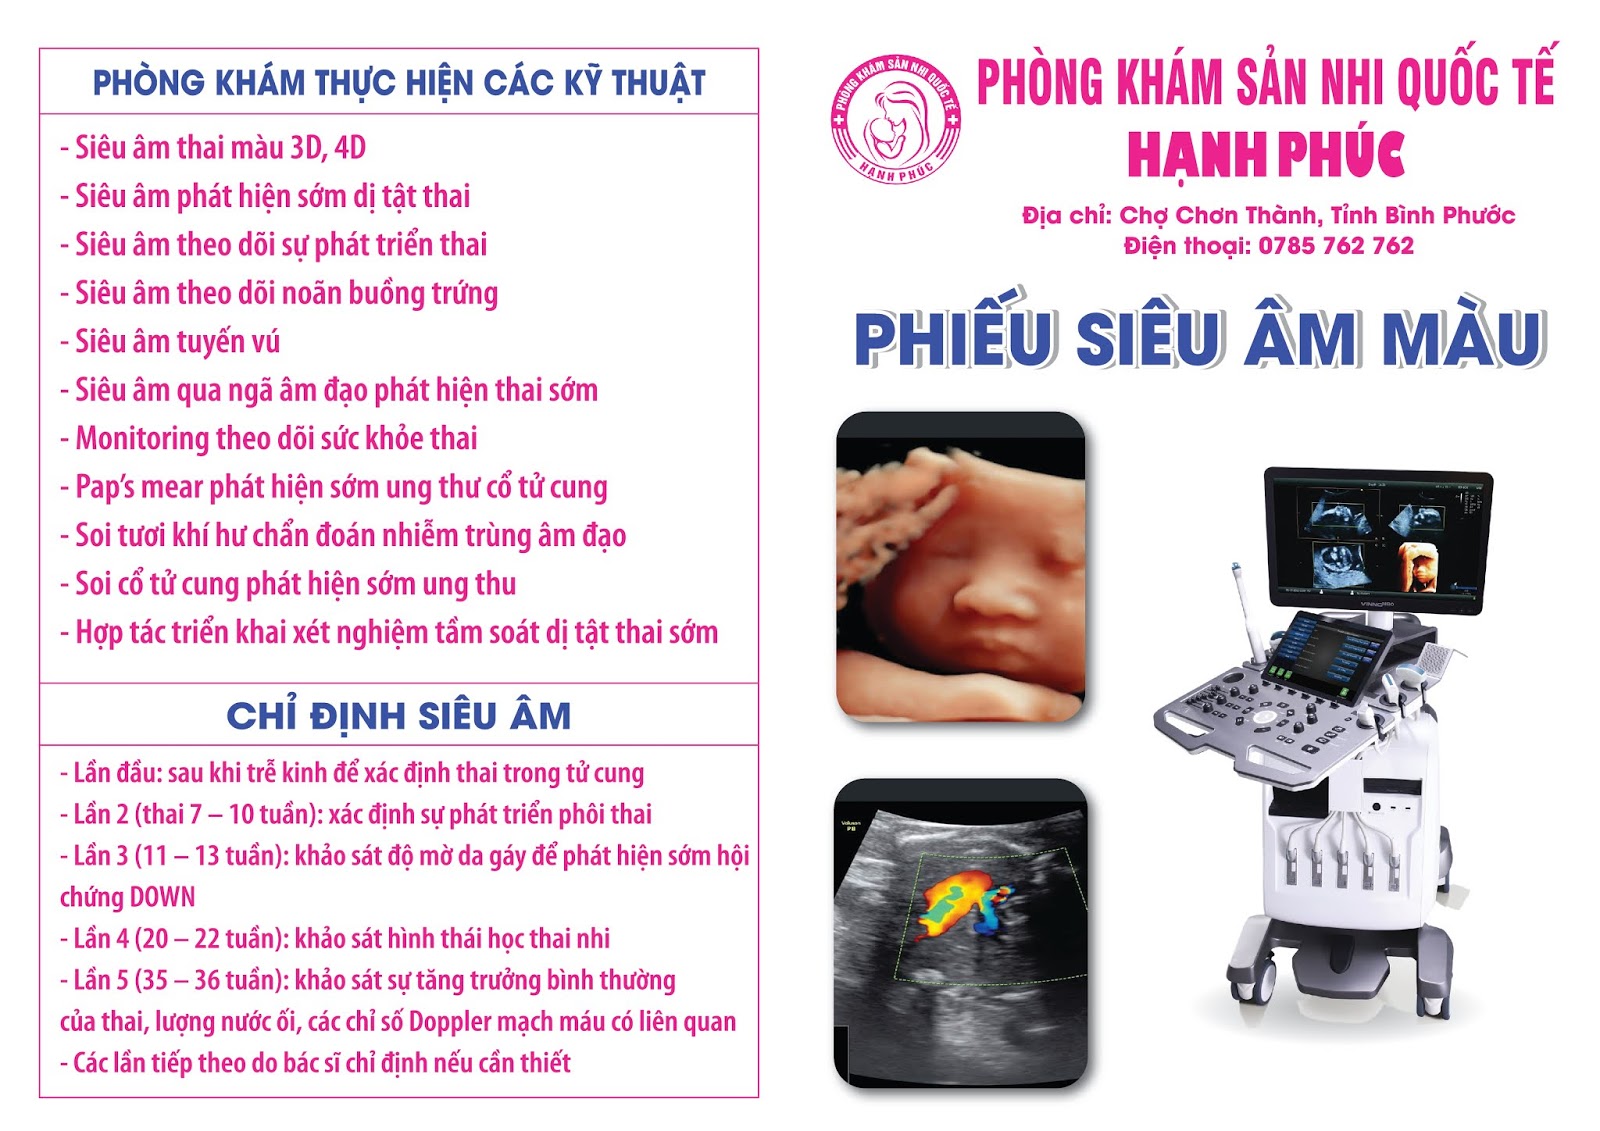 In giấy siêu âm là công nghệ hiện đại giúp chúng ta có thể thấy được hình ảnh của đứa trẻ trong bụng mẹ một cách rõ ràng và chính xác. Điều này rất quan trọng đối với việc theo dõi sự phát triển của thai nhi và đảm bảo sức khỏe của mẹ và bé.